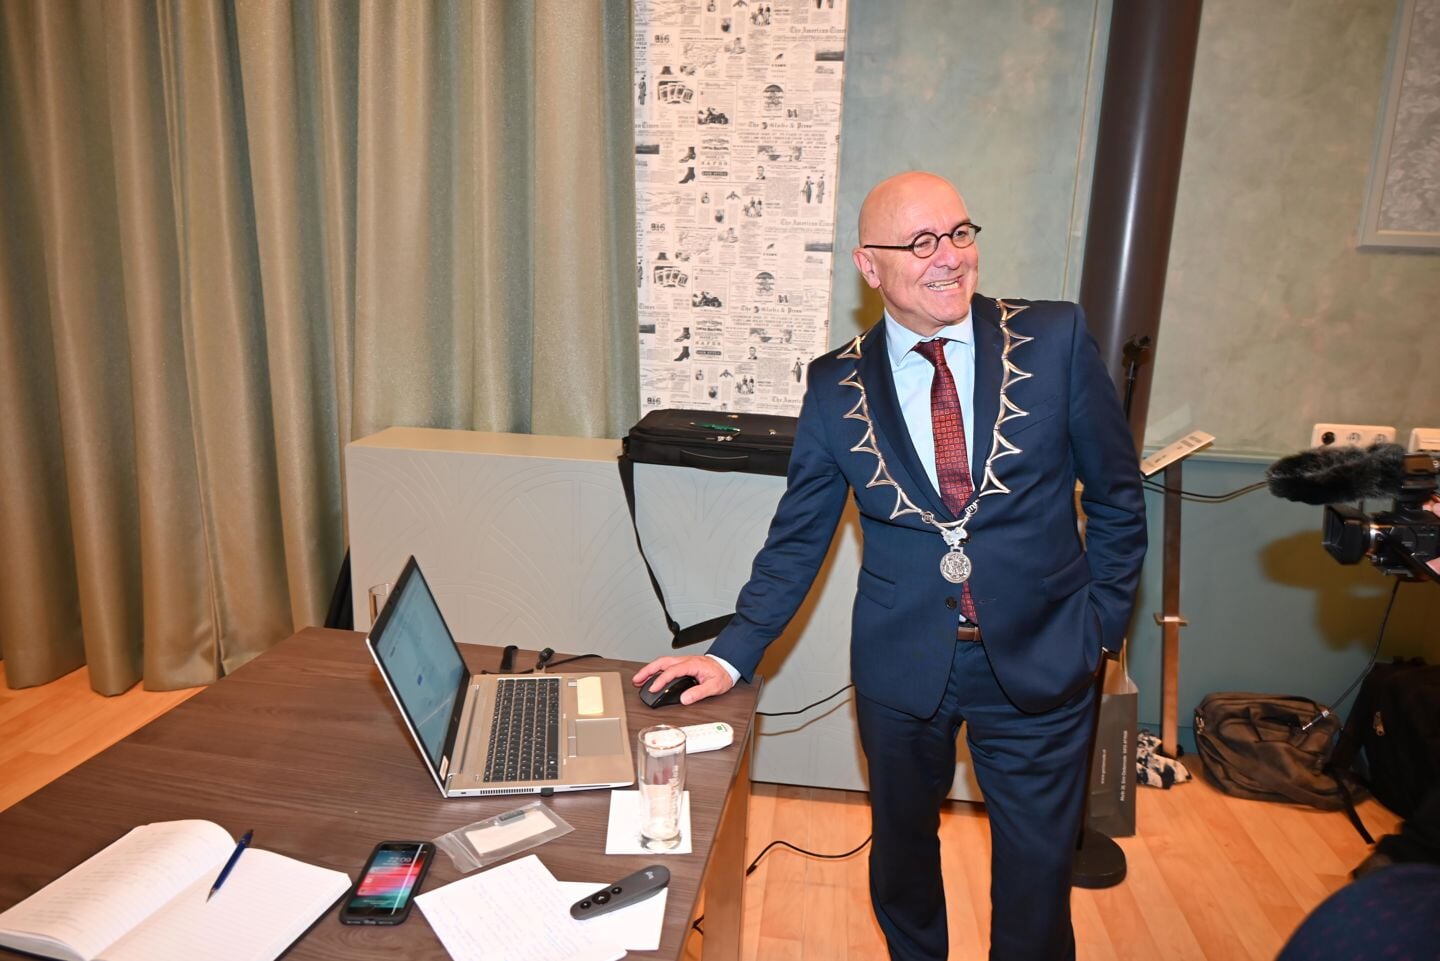 Burgemeester Kees van Rooij drukt op de toets